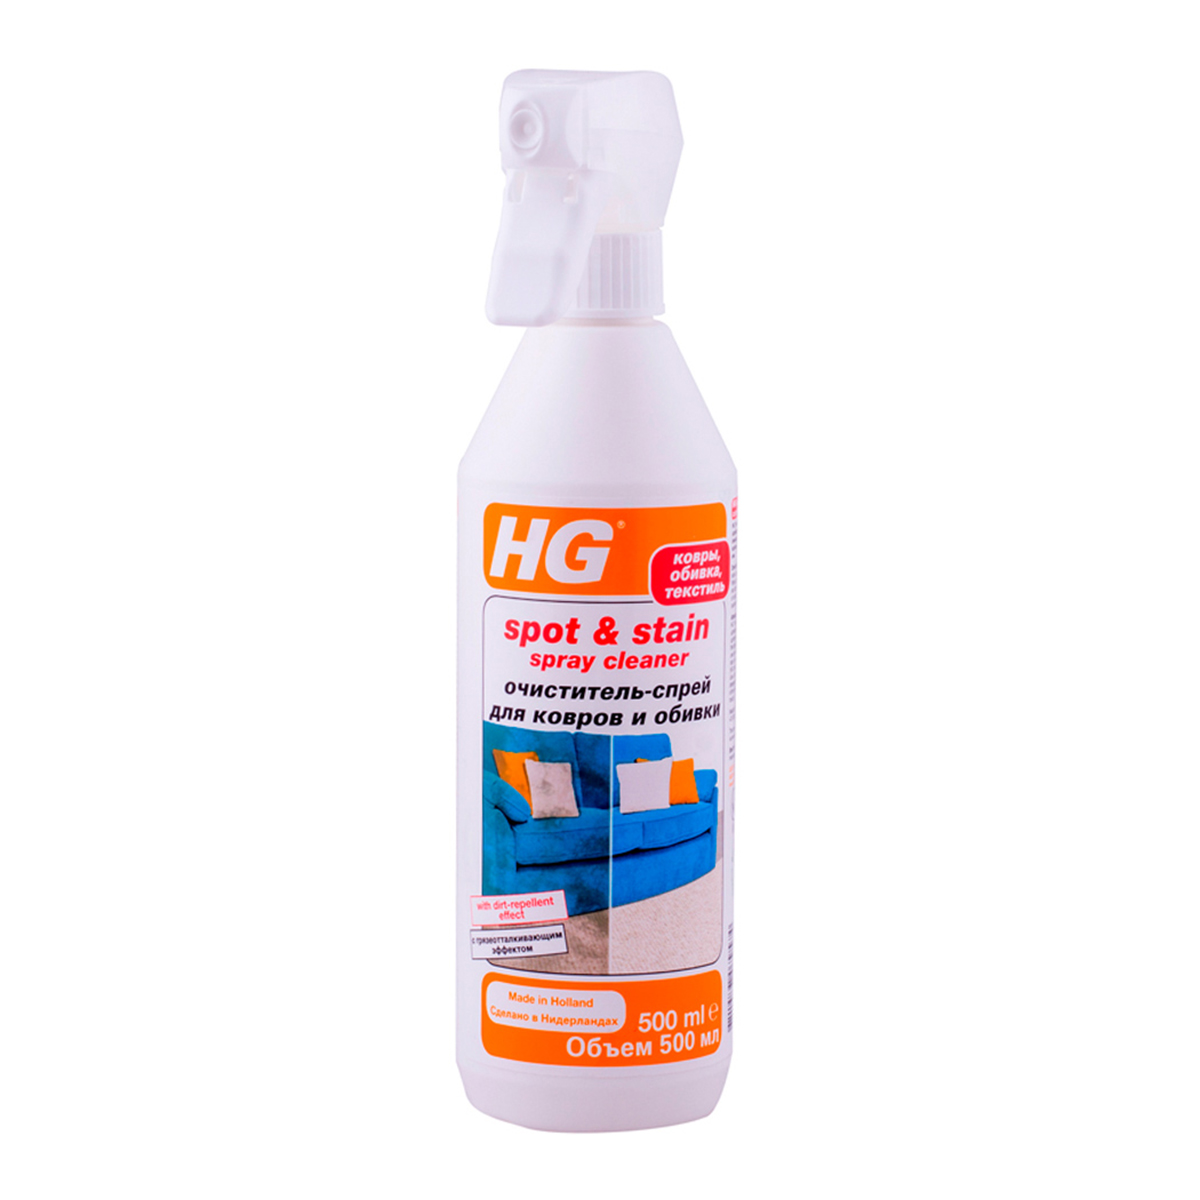 HG средство для очистки и защиты ковров и обивки